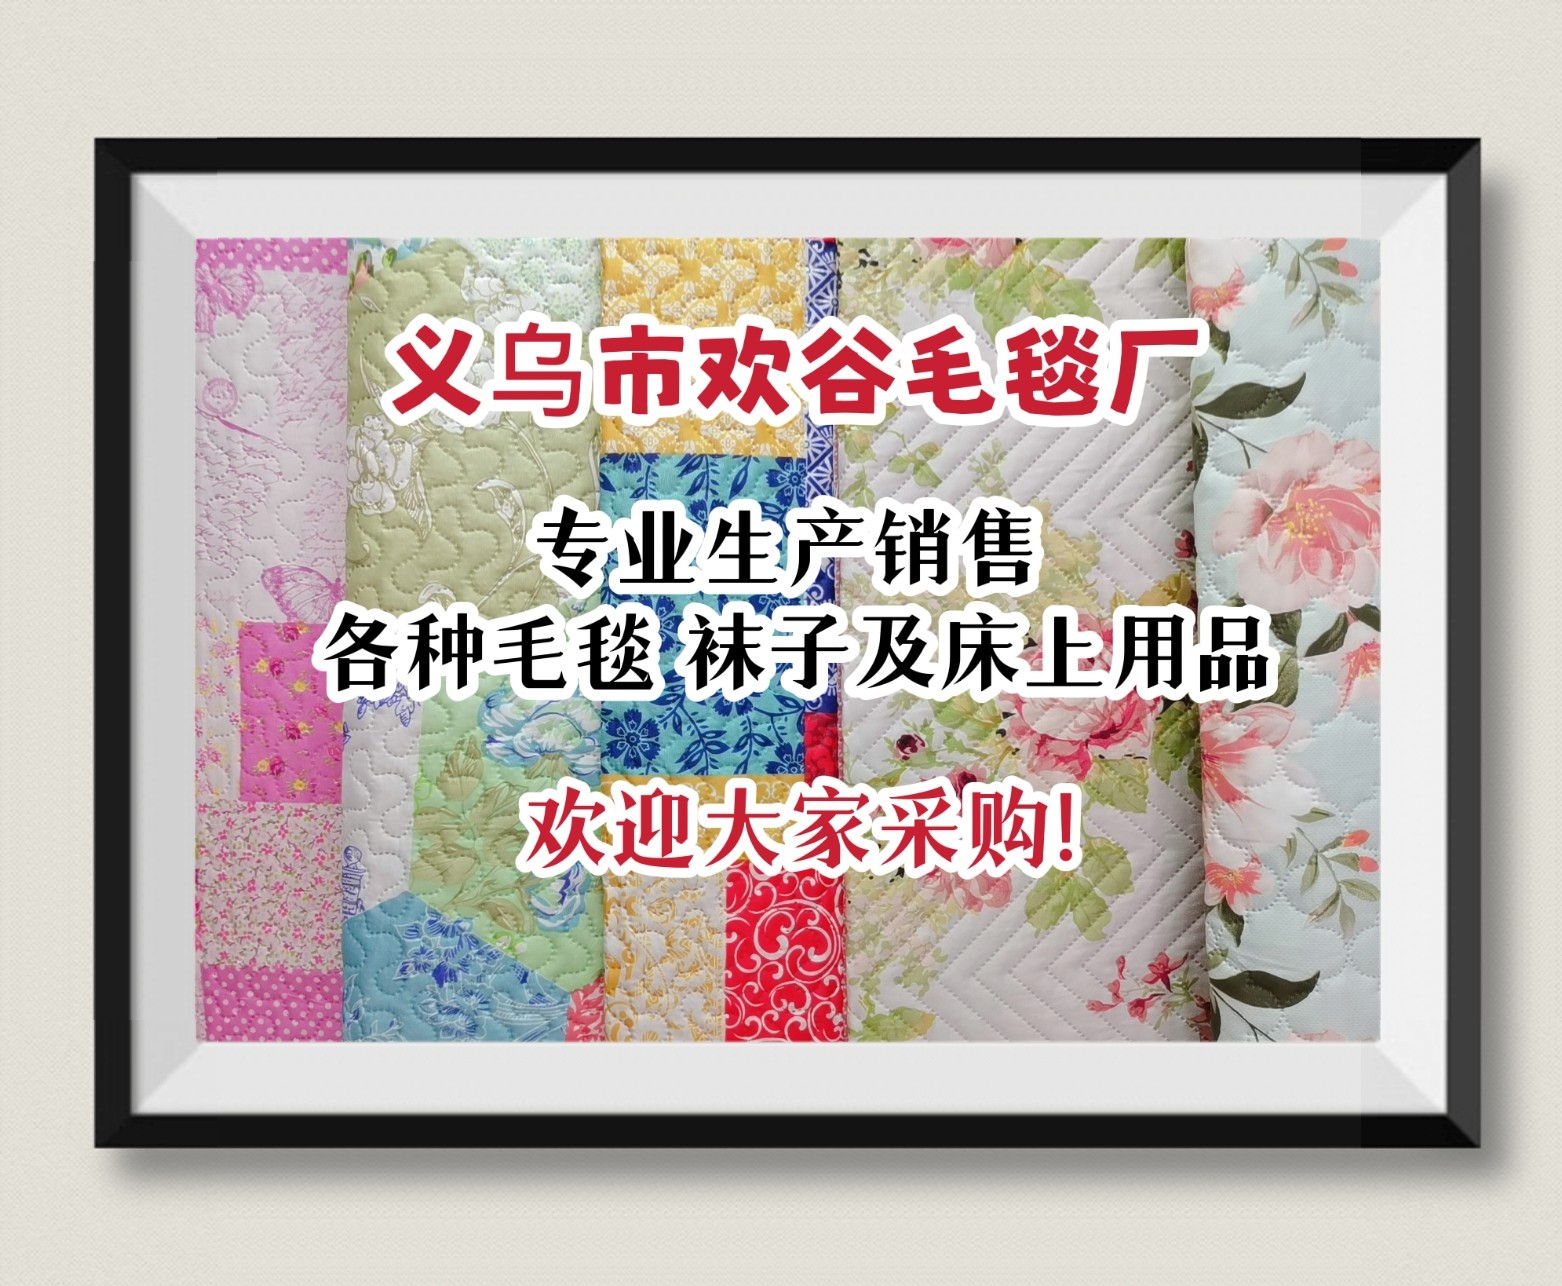 COTV直播-义乌市欢谷毛毯厂生产销售各种毛毯、双面绒床单、童毯、四件套、浴巾、袜子等产品，欢迎大家光临！